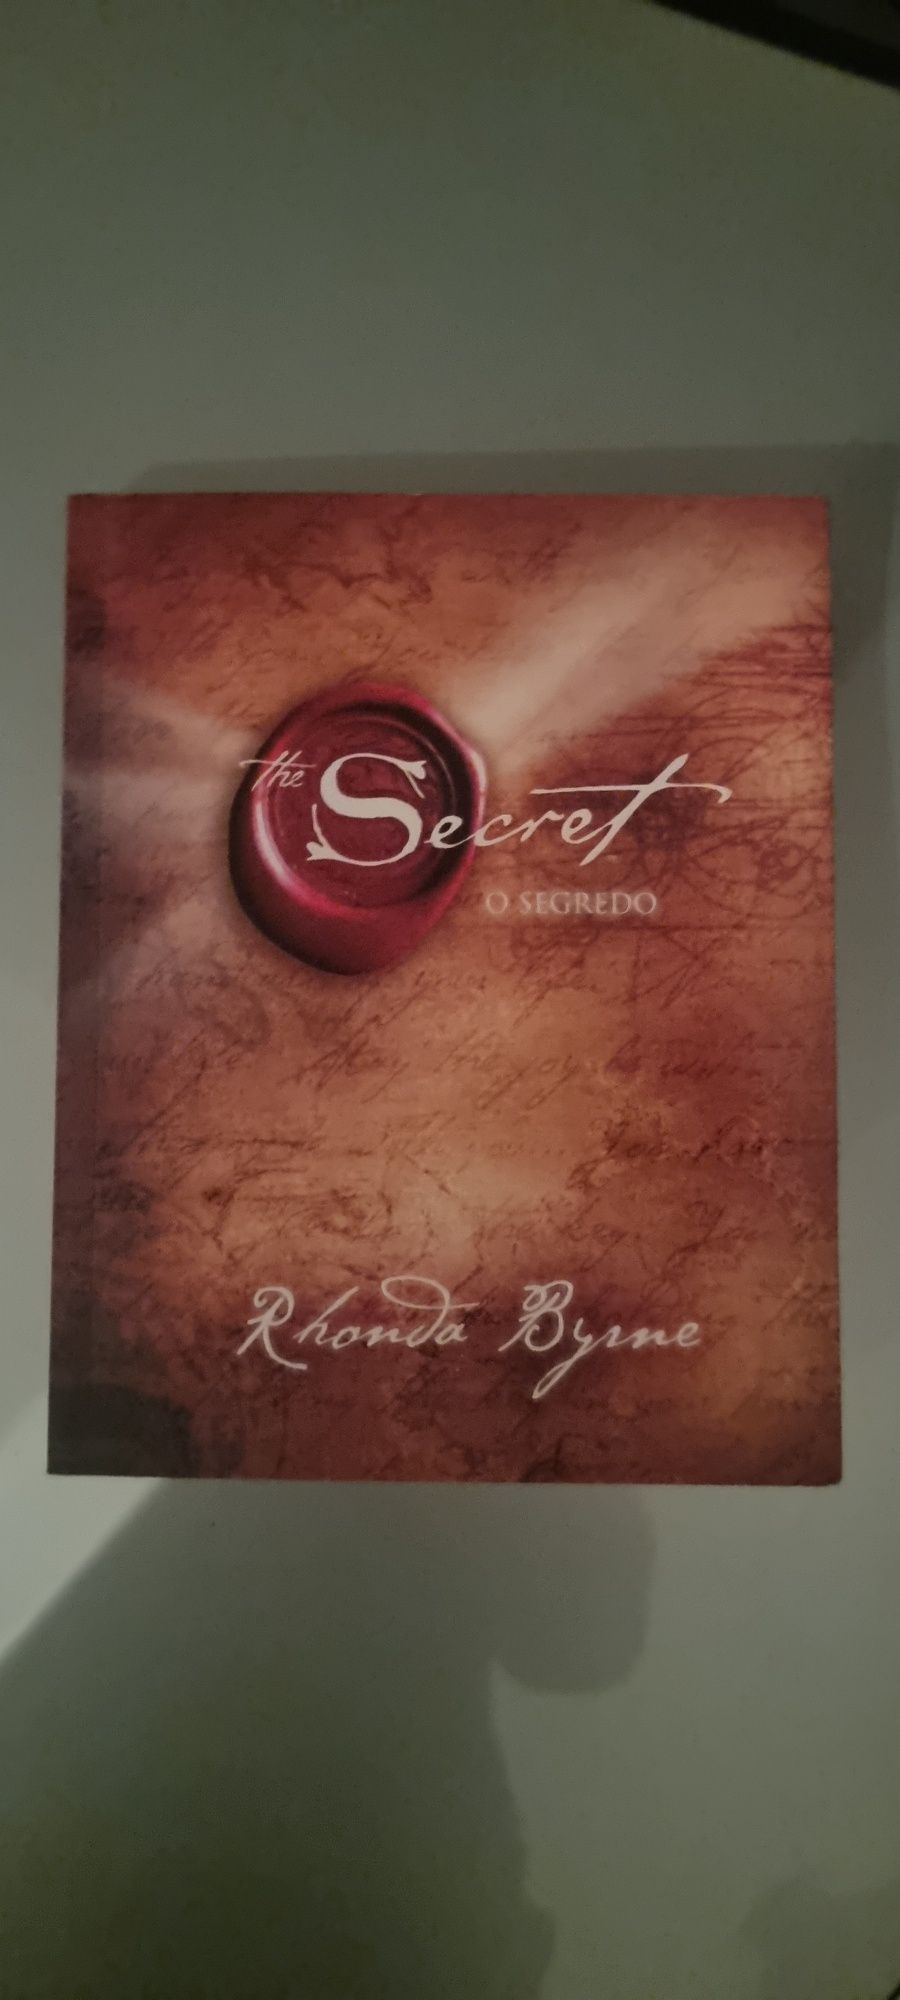 Livro "secret"        .